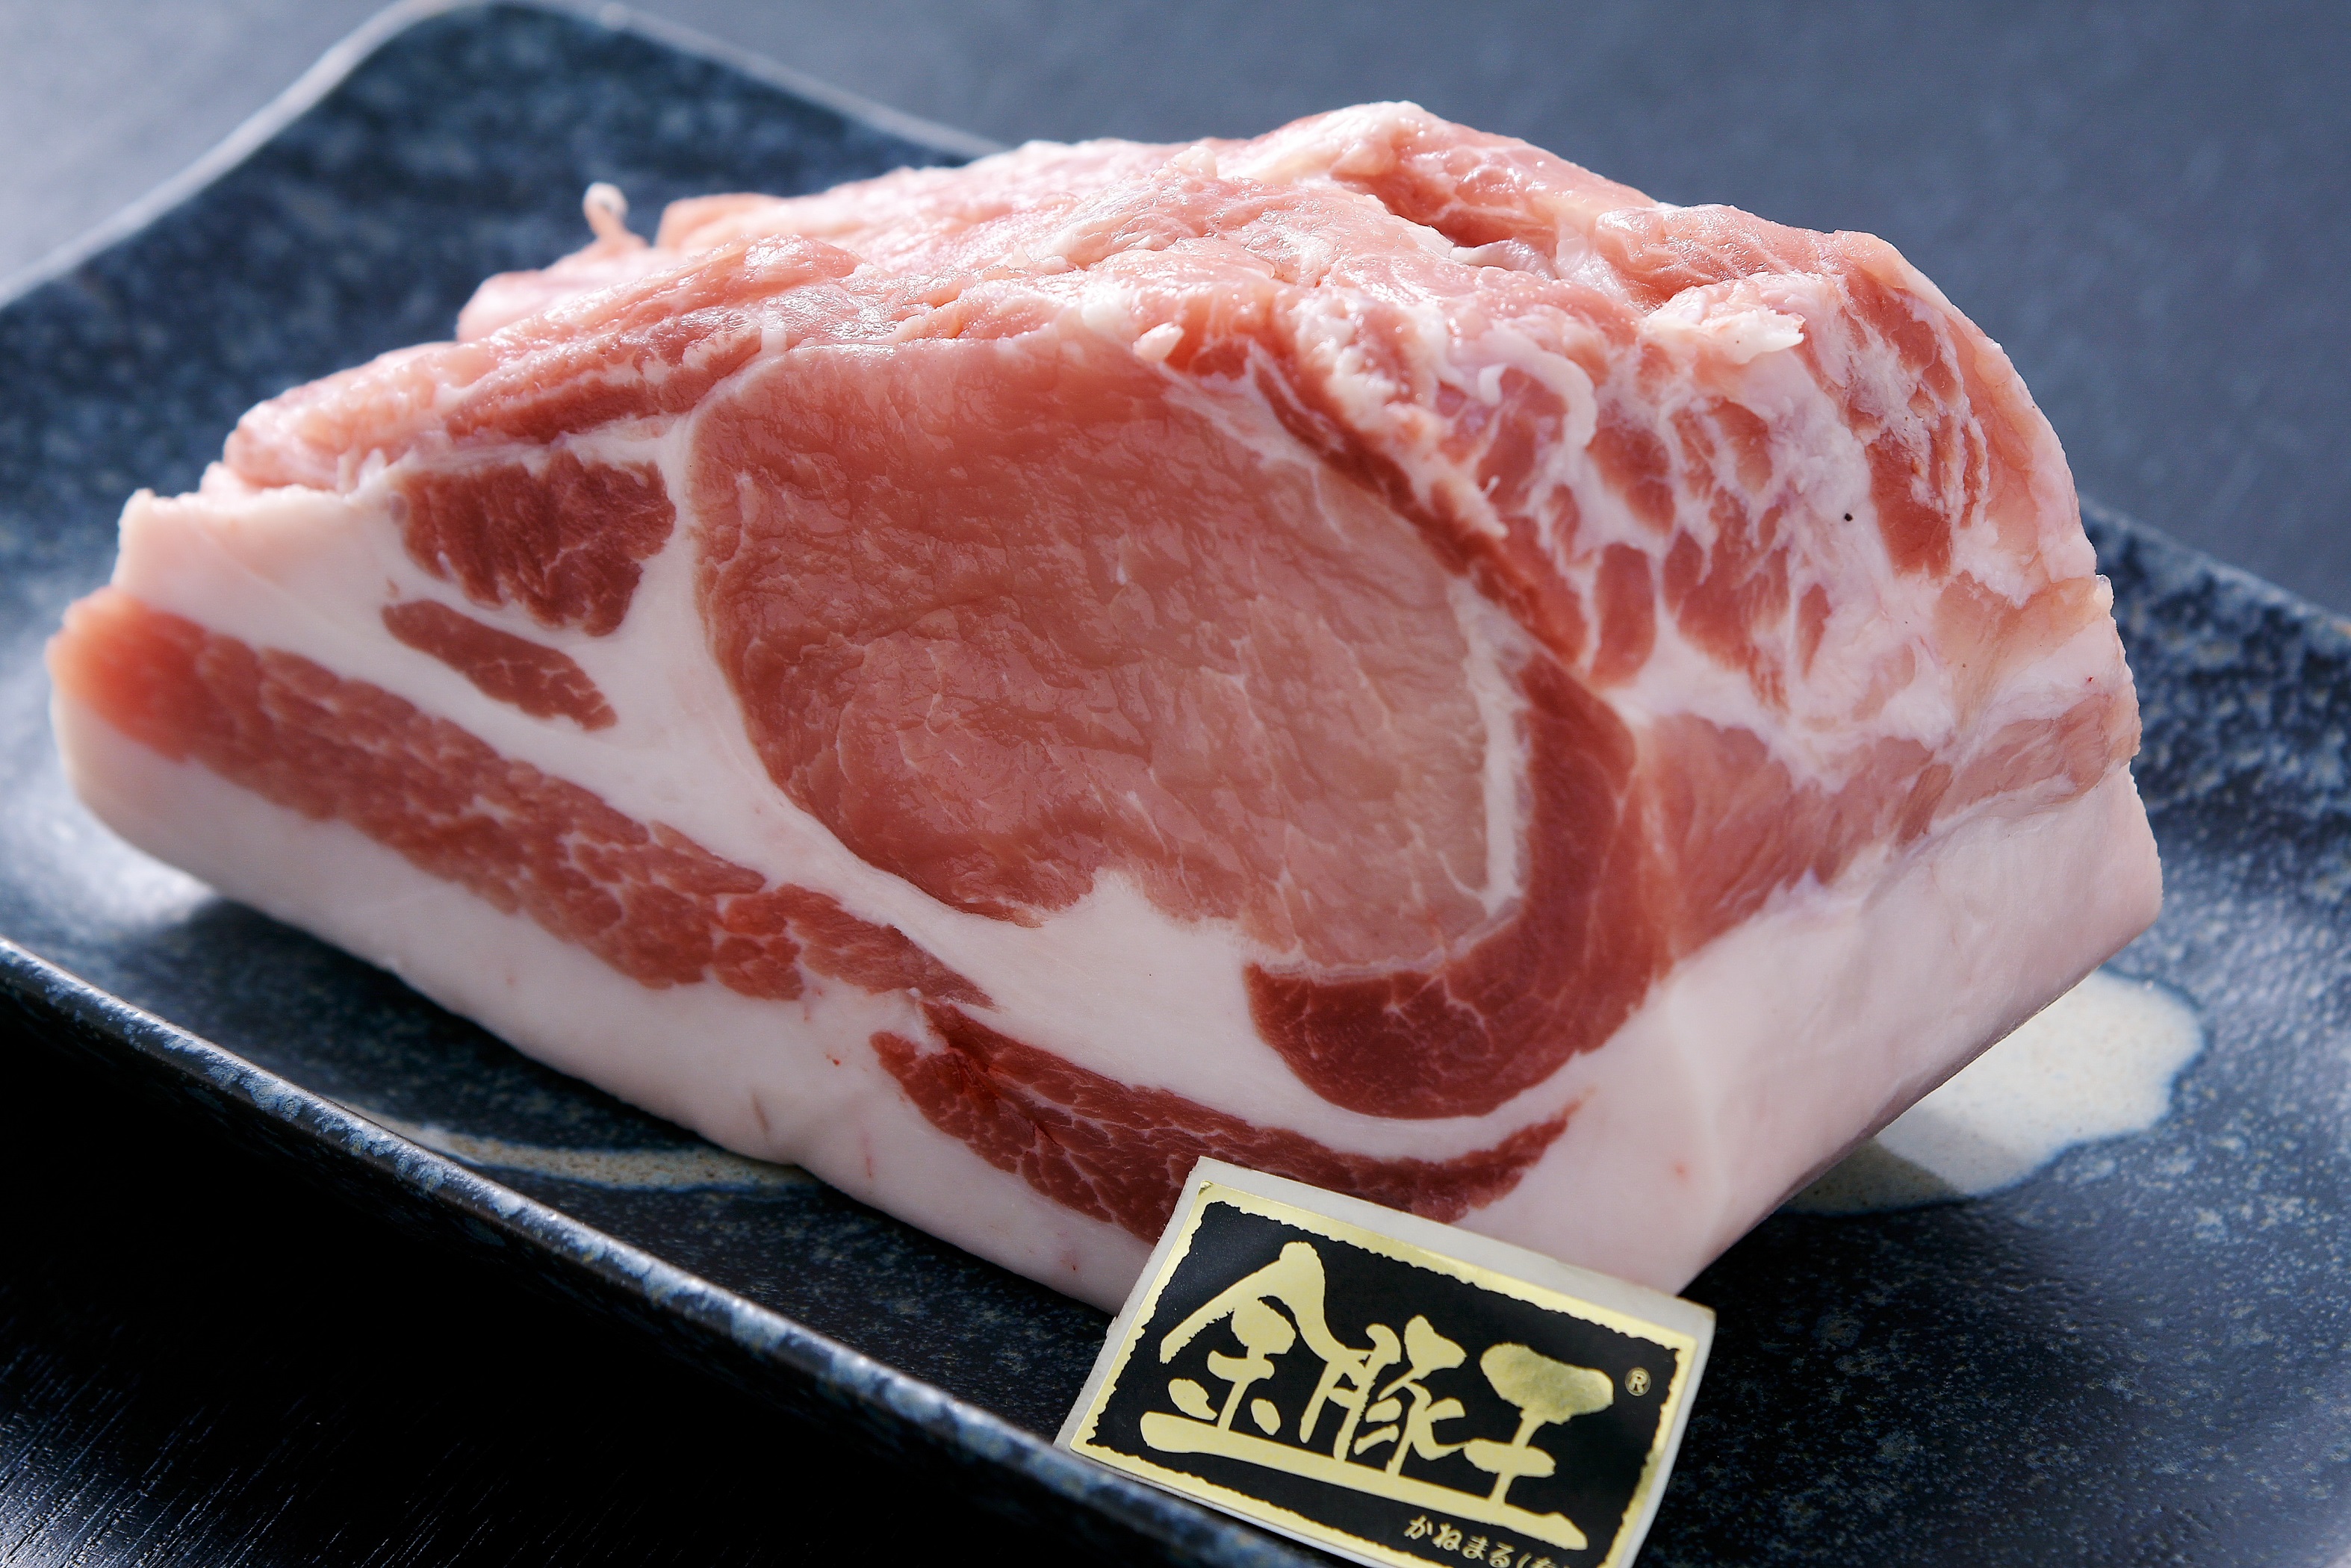 幻の高級食材金華豚とフジロックから生まれた金豚王。肉の柔らかさと脂の旨味が特徴です。
金豚王だから実現できる美味しいけどしつこくない脂の旨味が絶品です。
柔らかい高品質な肉質の豚肉です。